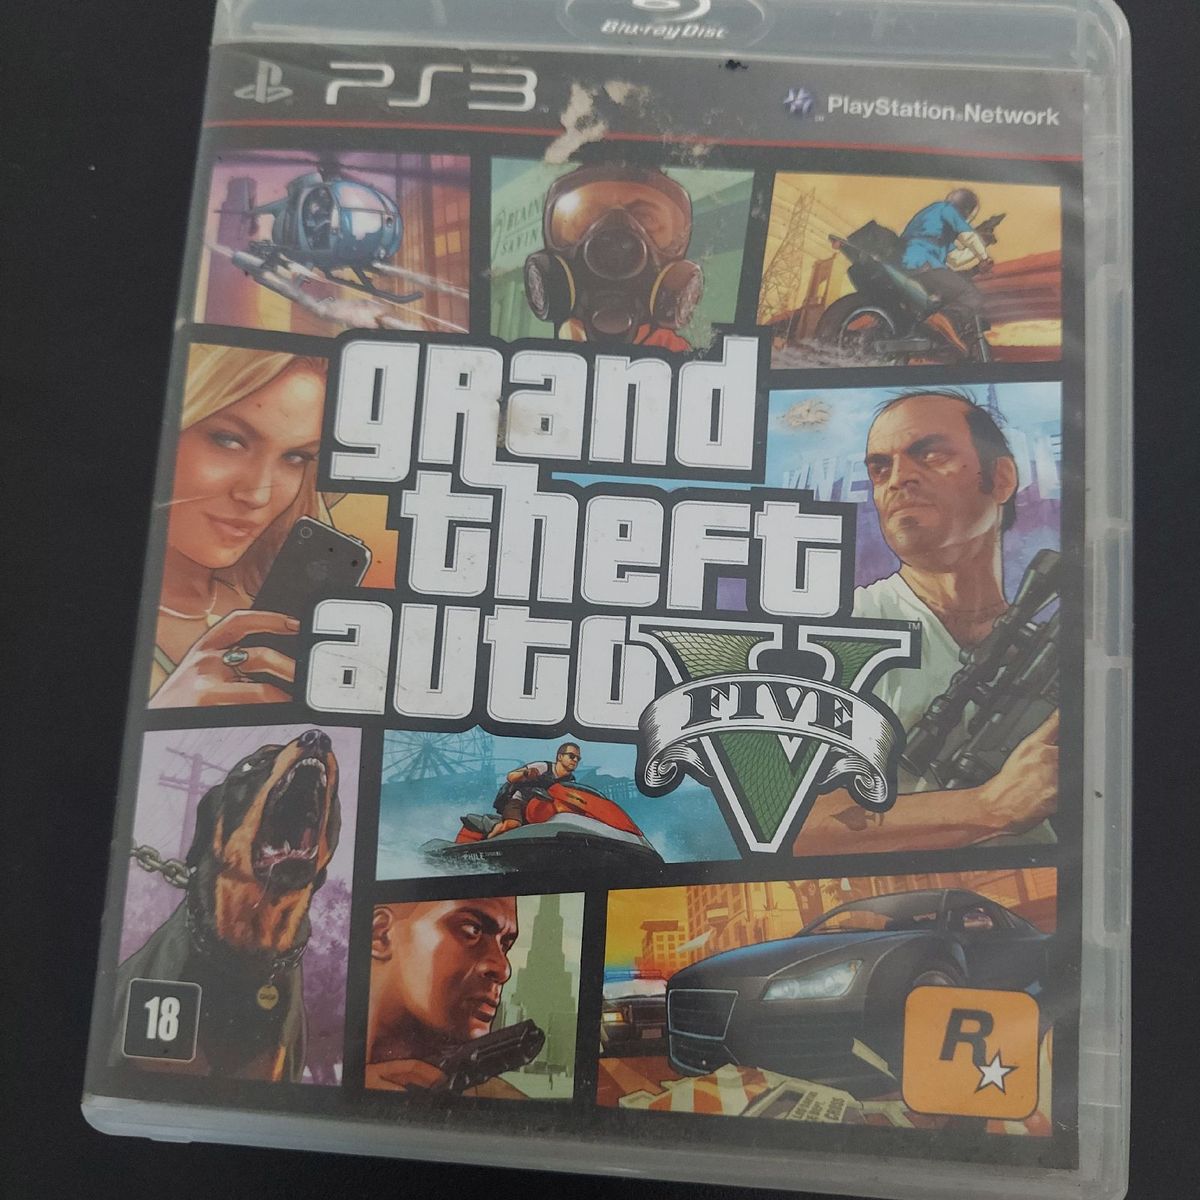 Gta 5 Ps3 - Grand Theft Auto V | Jogo de Videogame Ps3 Usado 52573770 |  enjoei